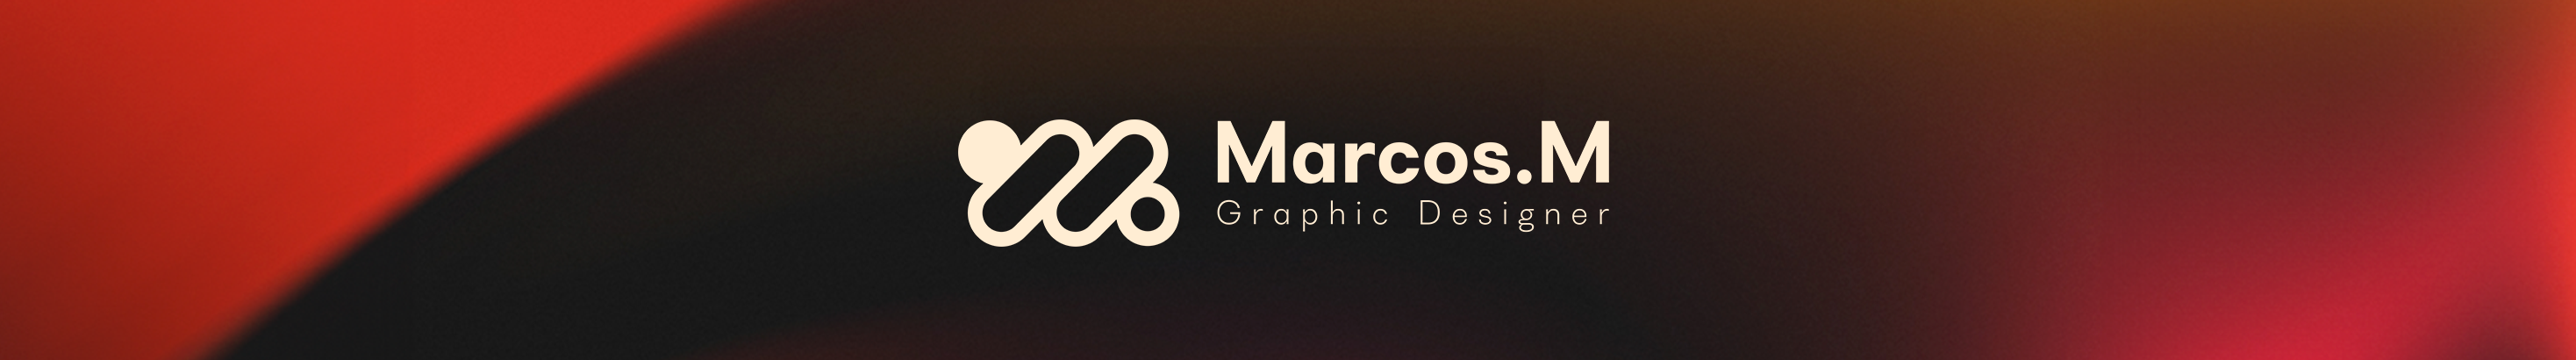 Marcos Morais's profile banner